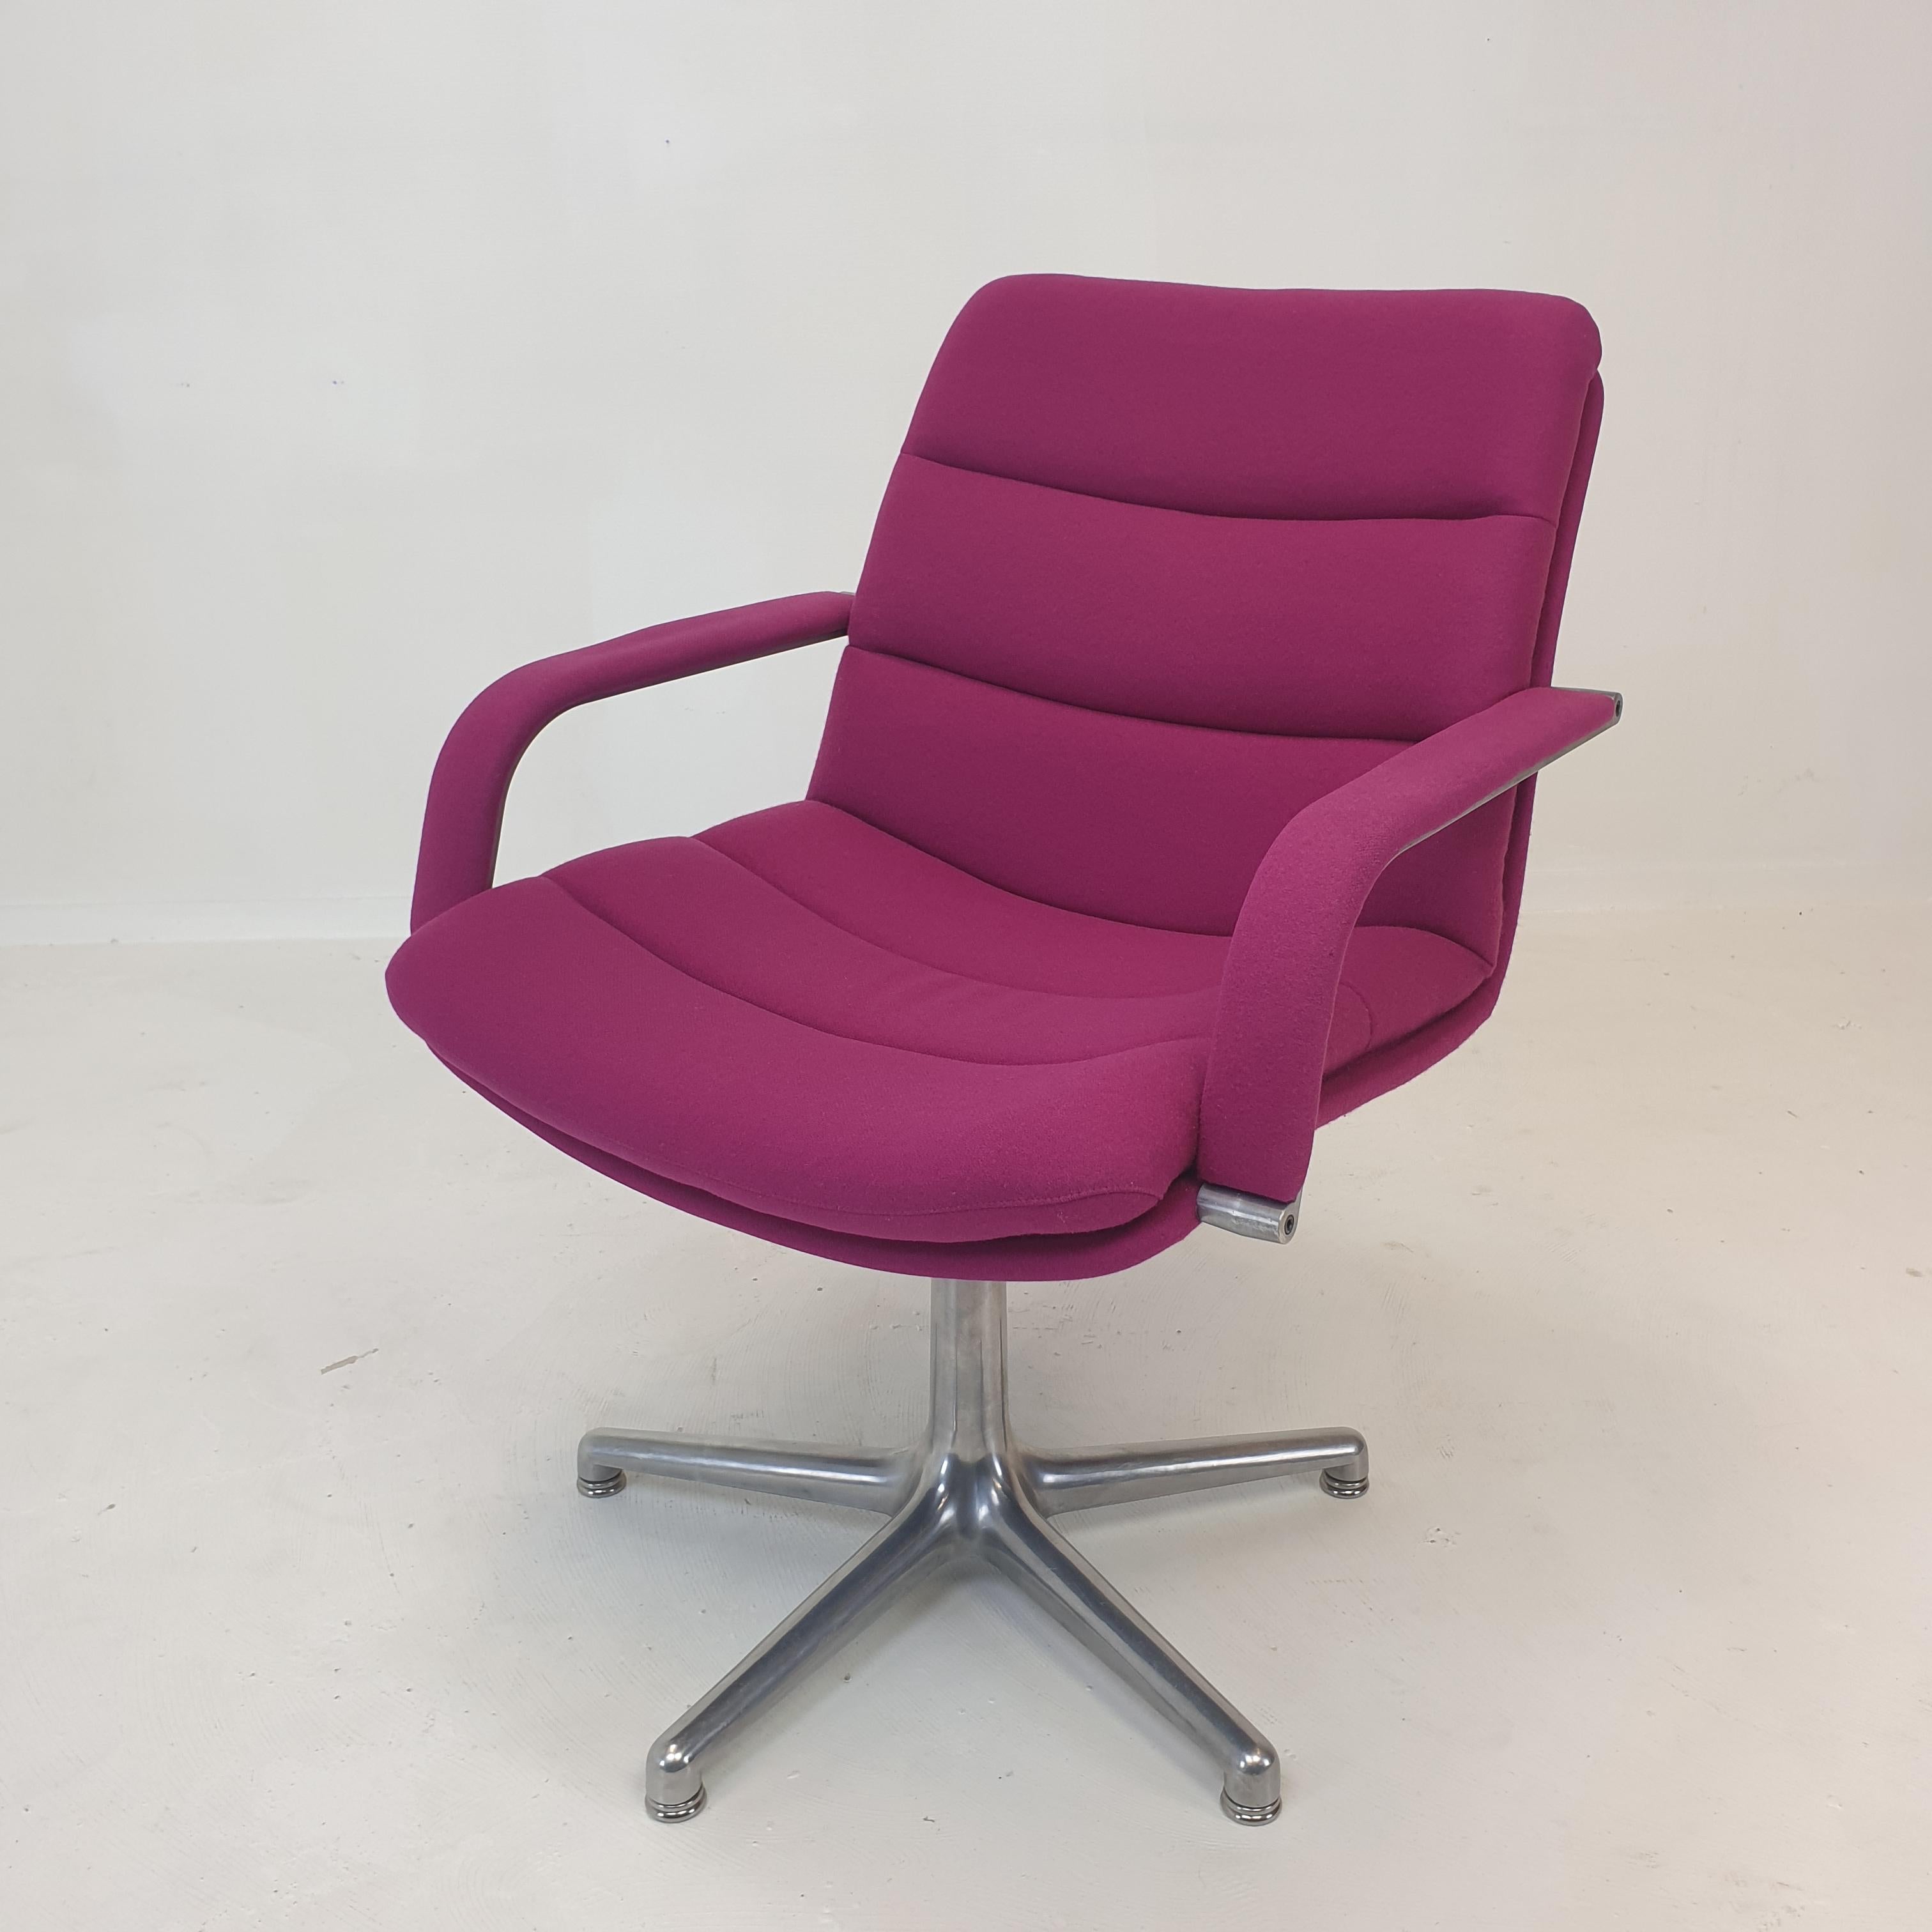 Très belle et confortable chaise de bureau conçue par Geoffrey Harcourt pour Artifort, Pays-Bas, années 1970

Ces fauteuils pivotants sont fabriqués avec les meilleurs matériaux, ils ont une base solide en aluminium à cinq pieds. 
Le rembourrage